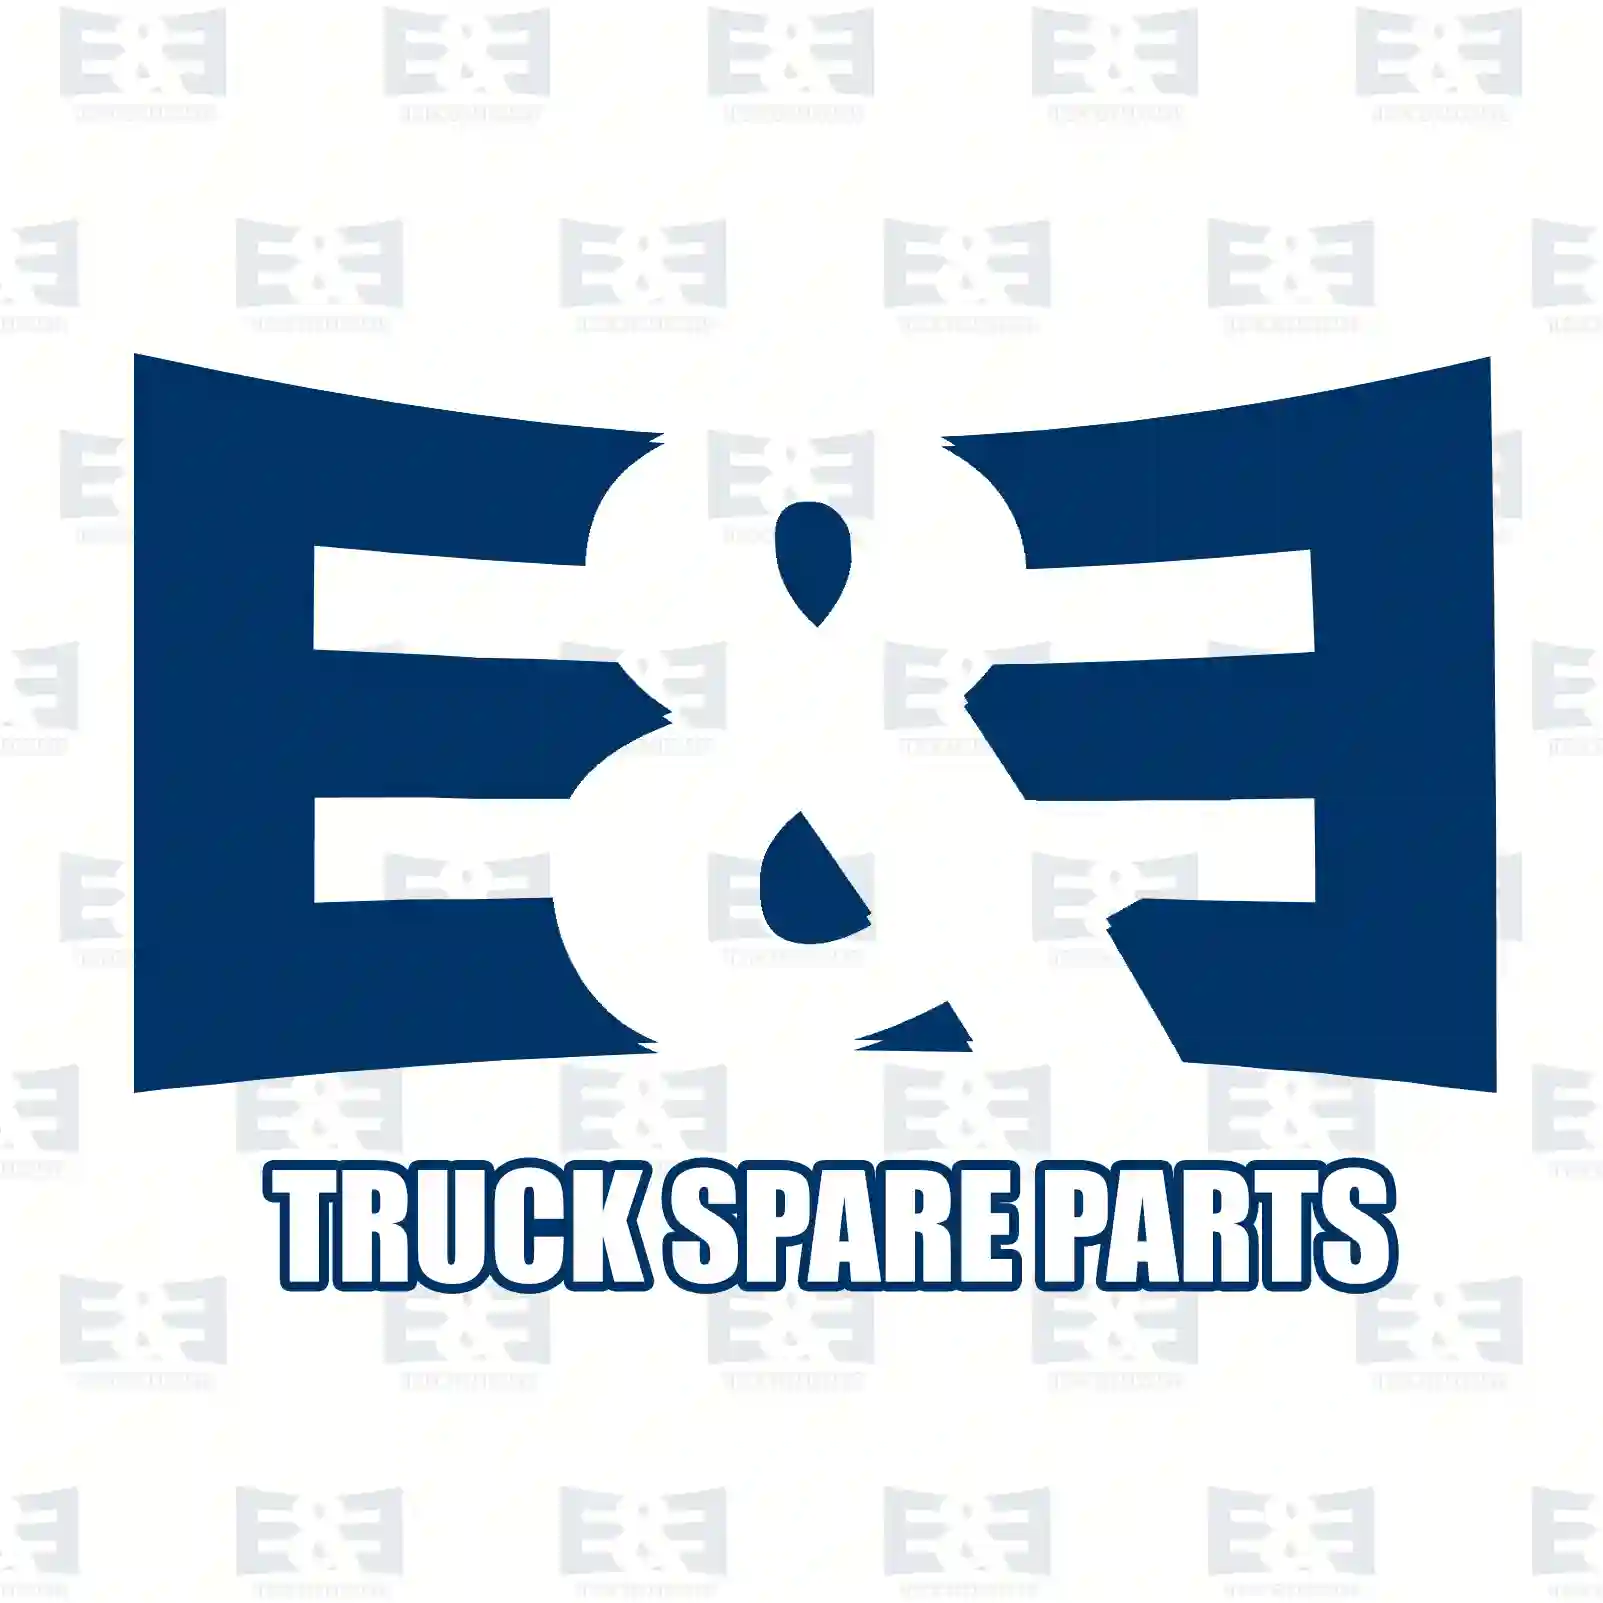 Wiper motor, 2E2292023, 00370323, 288216, 370323, 7731130001, ZG20200-0008 ||  2E2292023 E&E Truck Spare Parts | Truck Spare Parts, Auotomotive Spare Parts Wiper motor, 2E2292023, 00370323, 288216, 370323, 7731130001, ZG20200-0008 ||  2E2292023 E&E Truck Spare Parts | Truck Spare Parts, Auotomotive Spare Parts